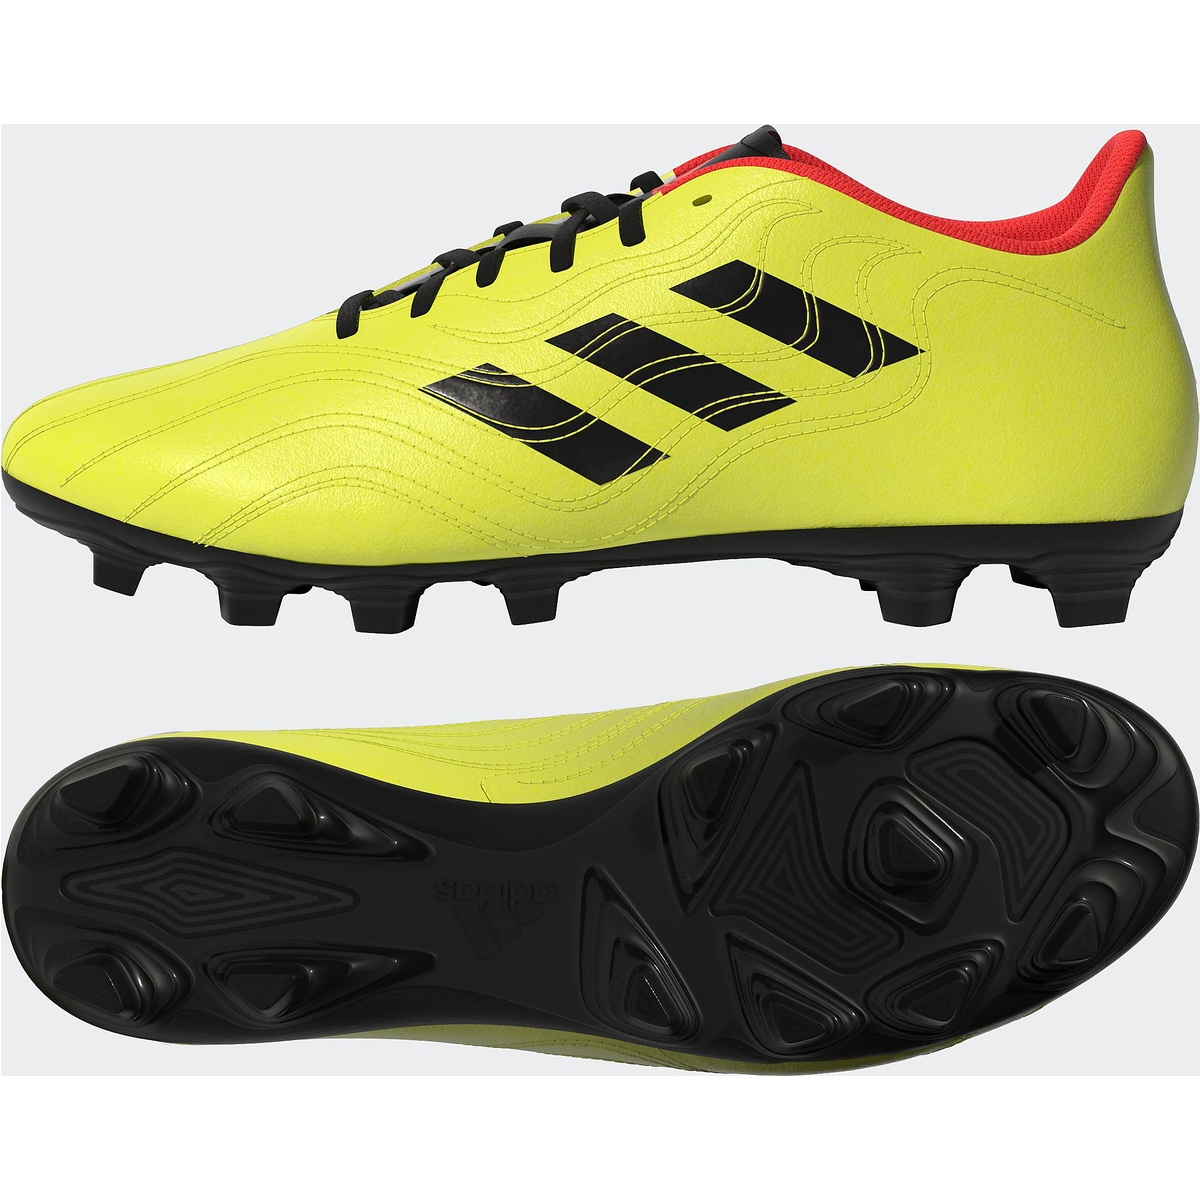 (adidas) コパ センス.4 AI1 サッカー スパイク チームソーラーイエロー/コアブラック/ソーラーレッド LKX65 GW3581 : スポーツオーソリティ 楽天市場店